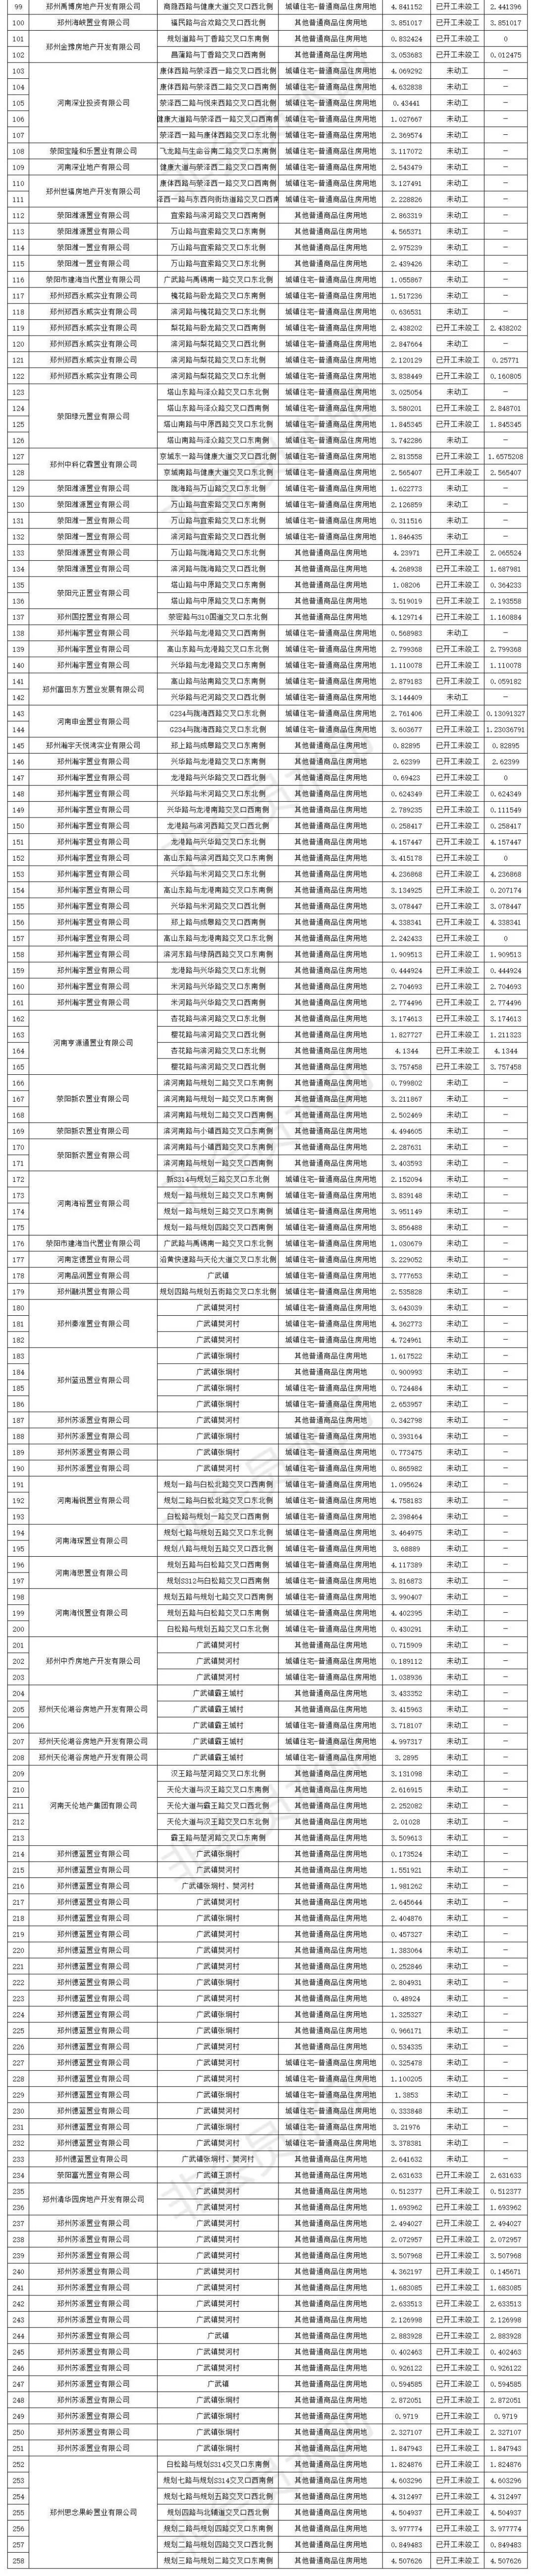 荥阳市存量住宅用地总面积6658246.6㎡，详细数据看这里